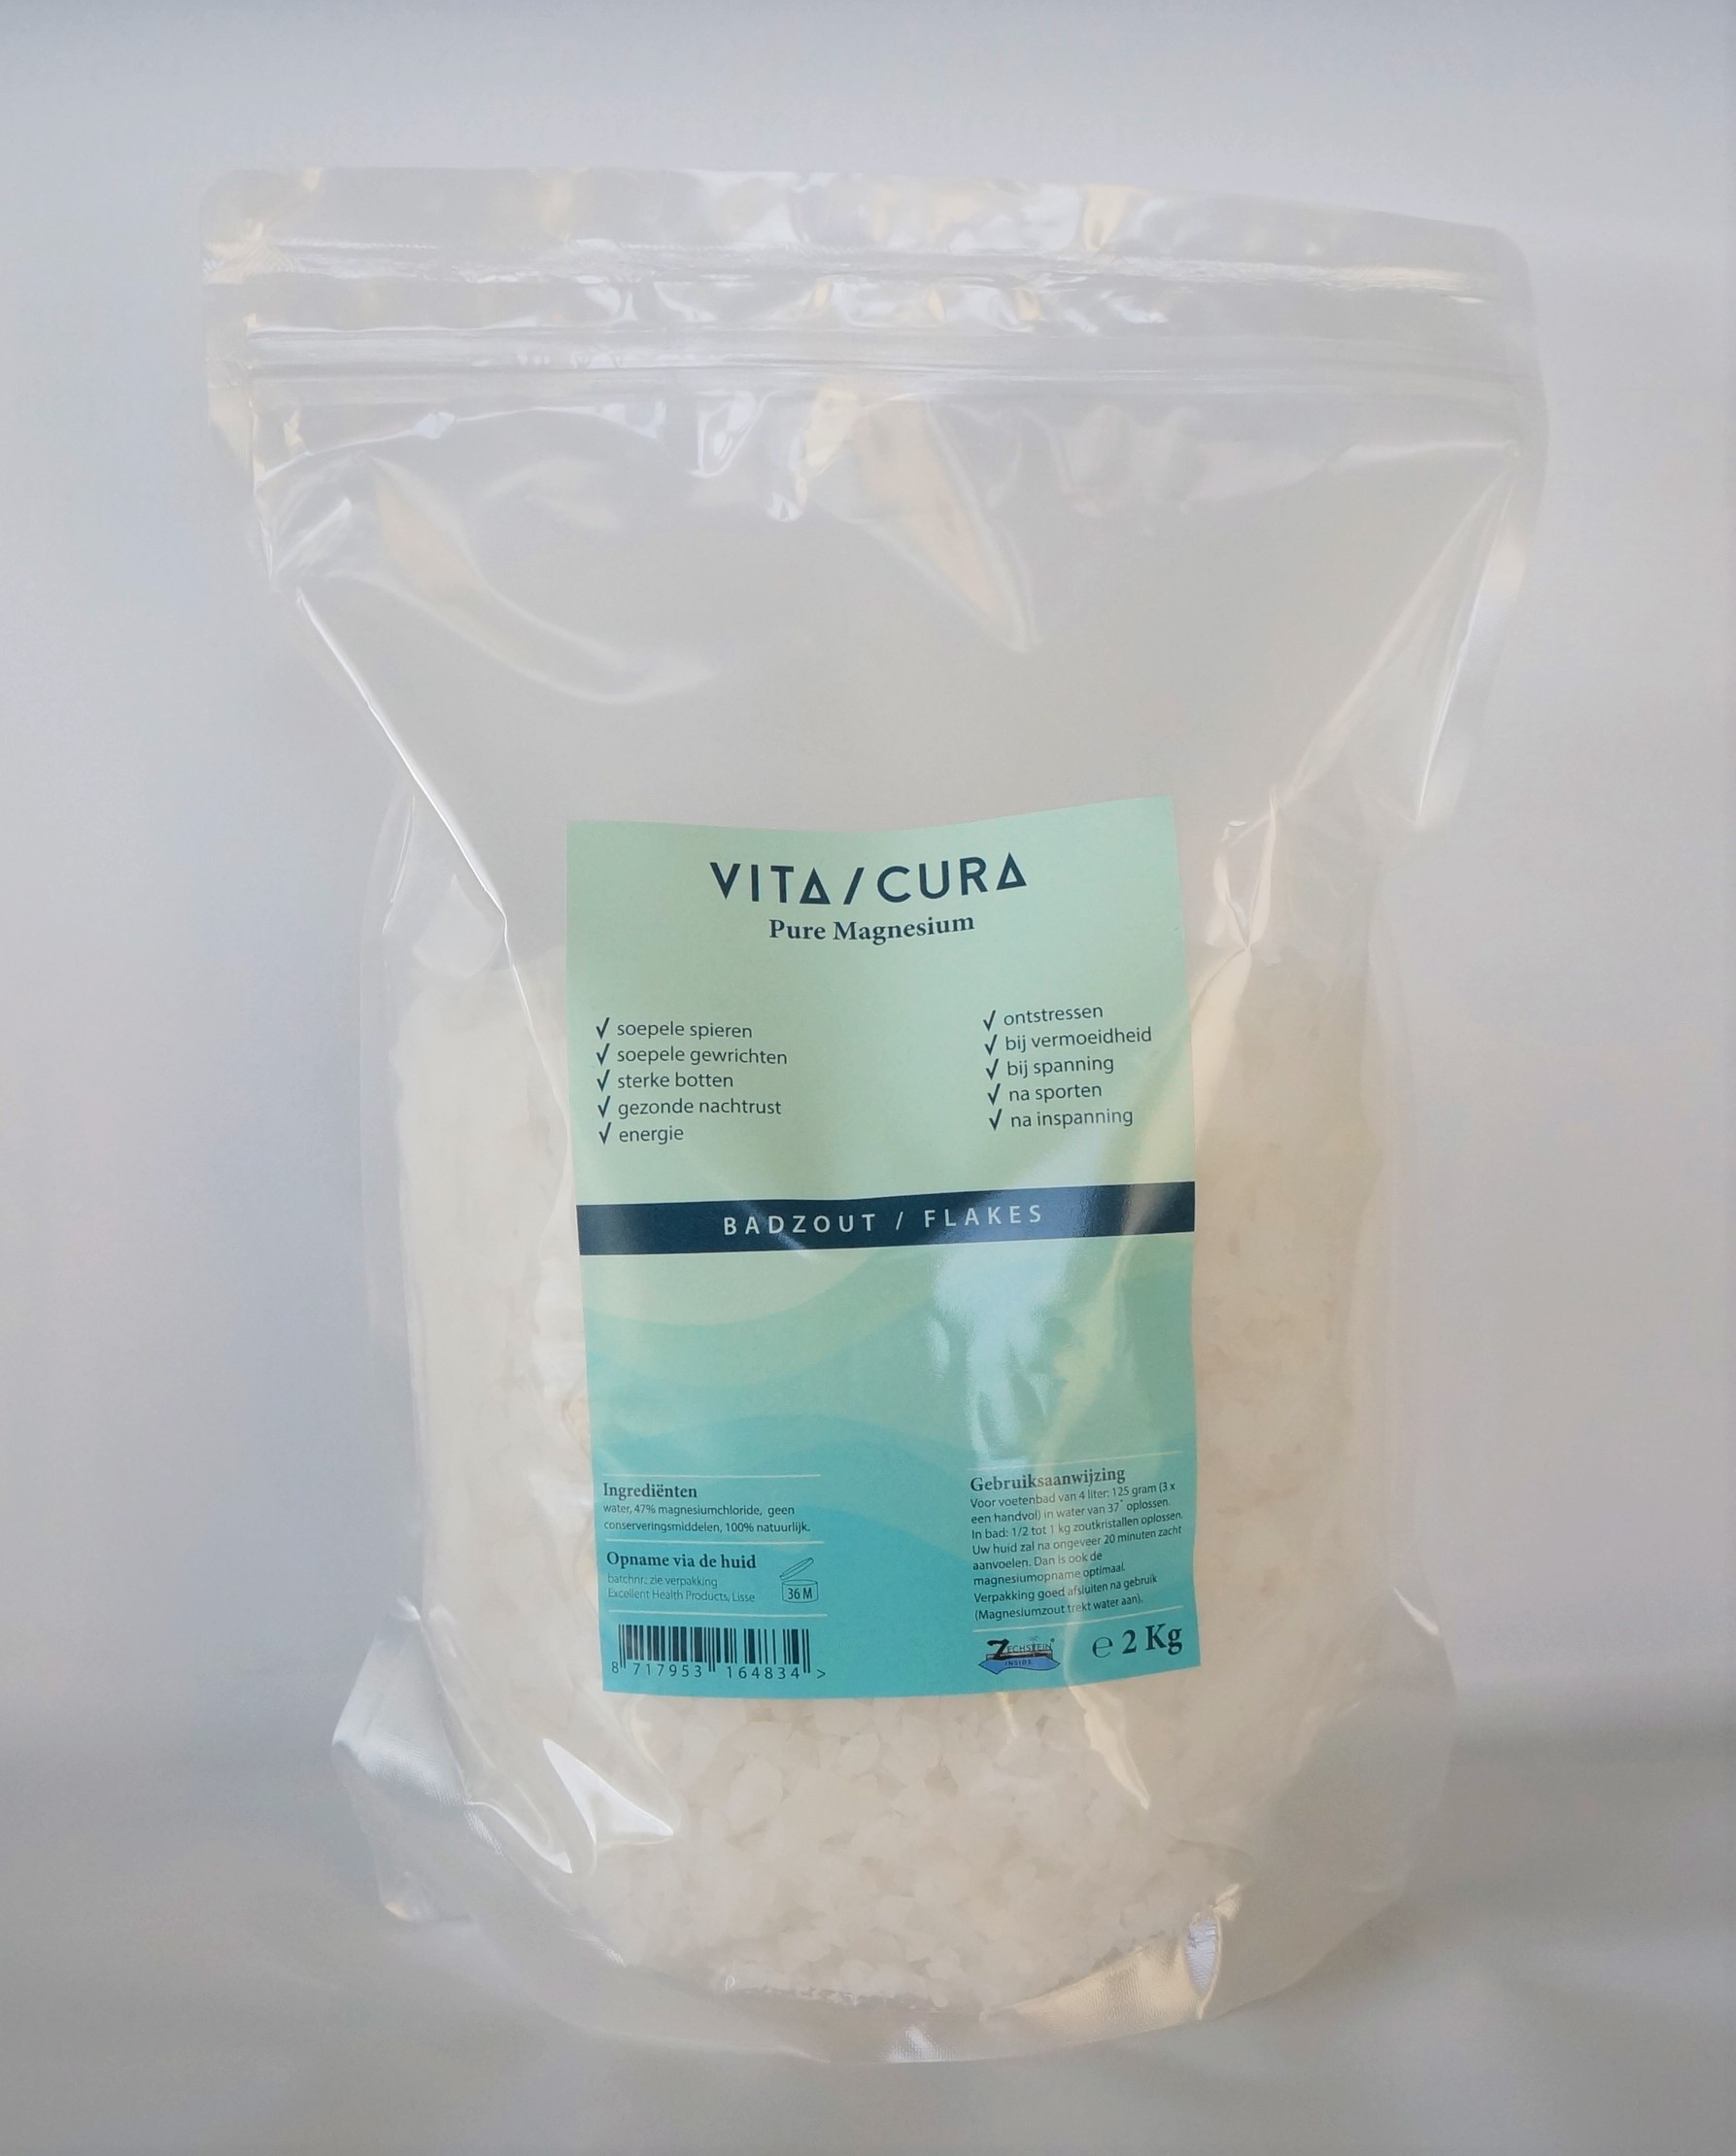 omdraaien gebruiker stikstof Magnesium zout/flakes 2kg - Vitacura